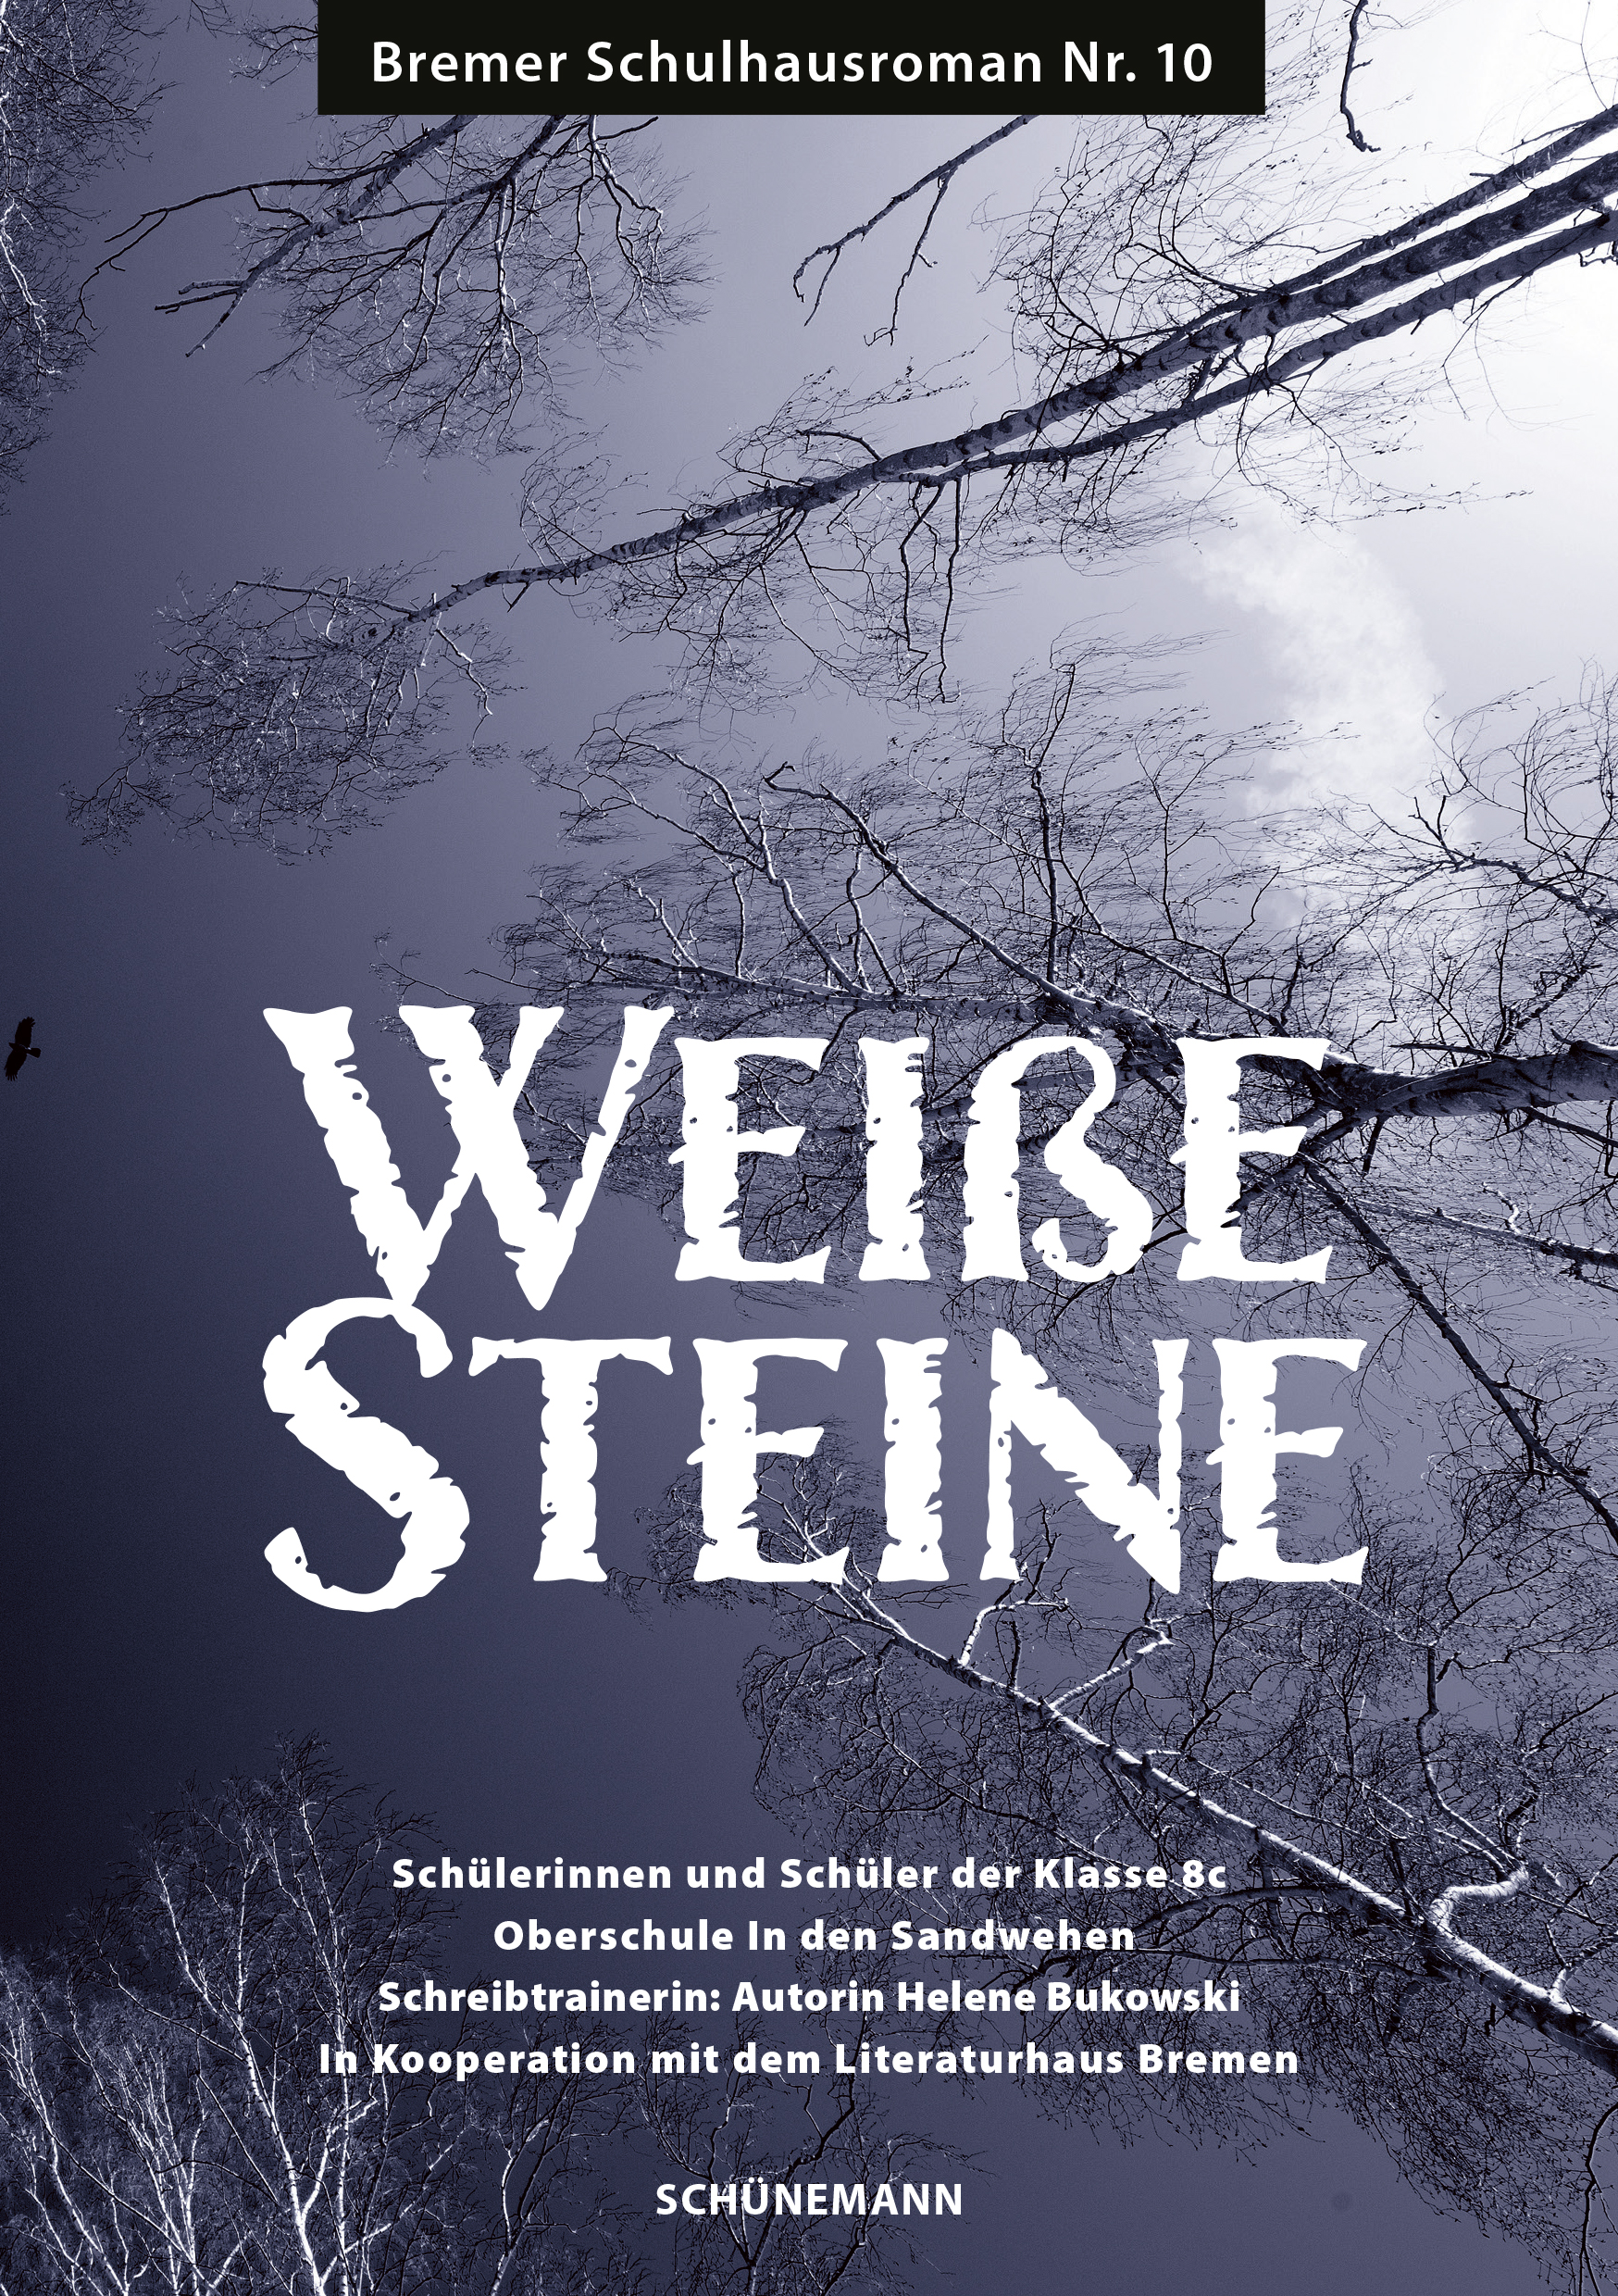 Cover des Bremer Schulhausromans "Weiße Steine"